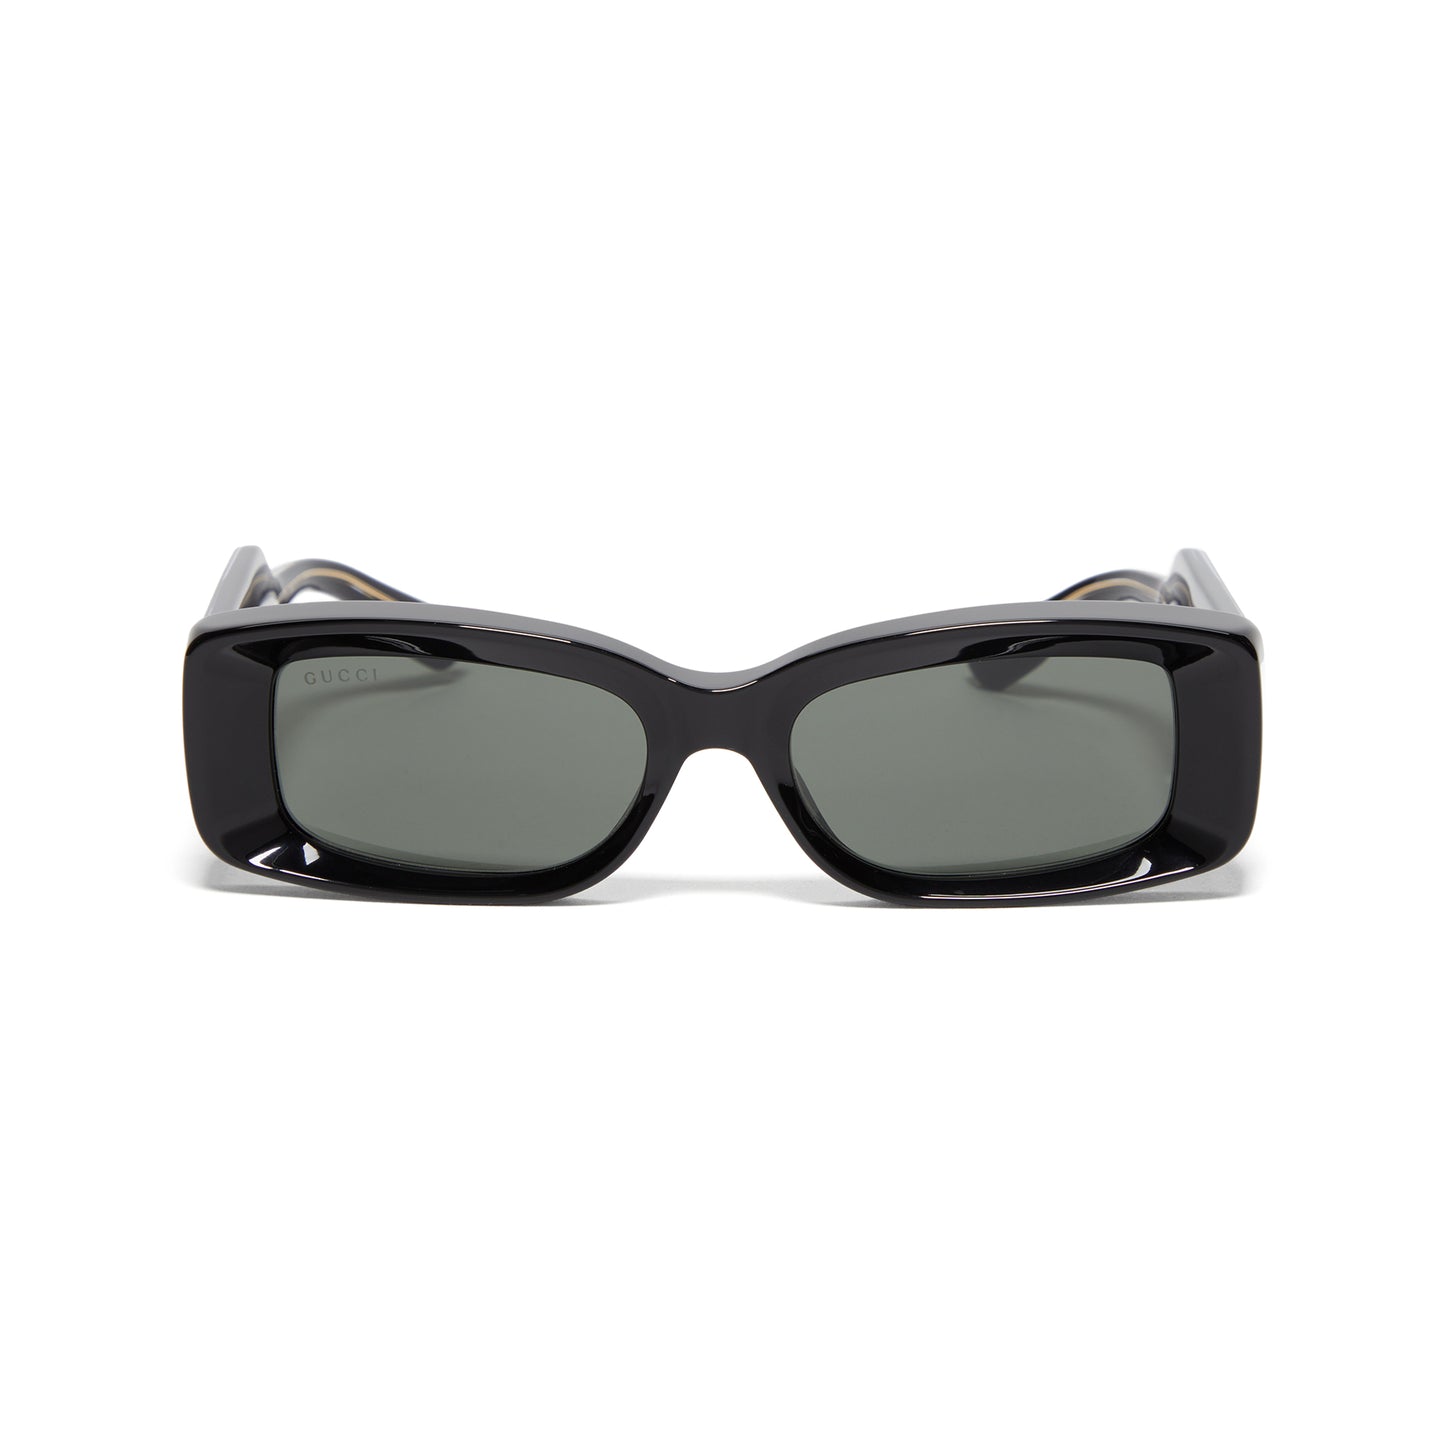 Gucci Rectangle Sunglasses (Black/Grey)